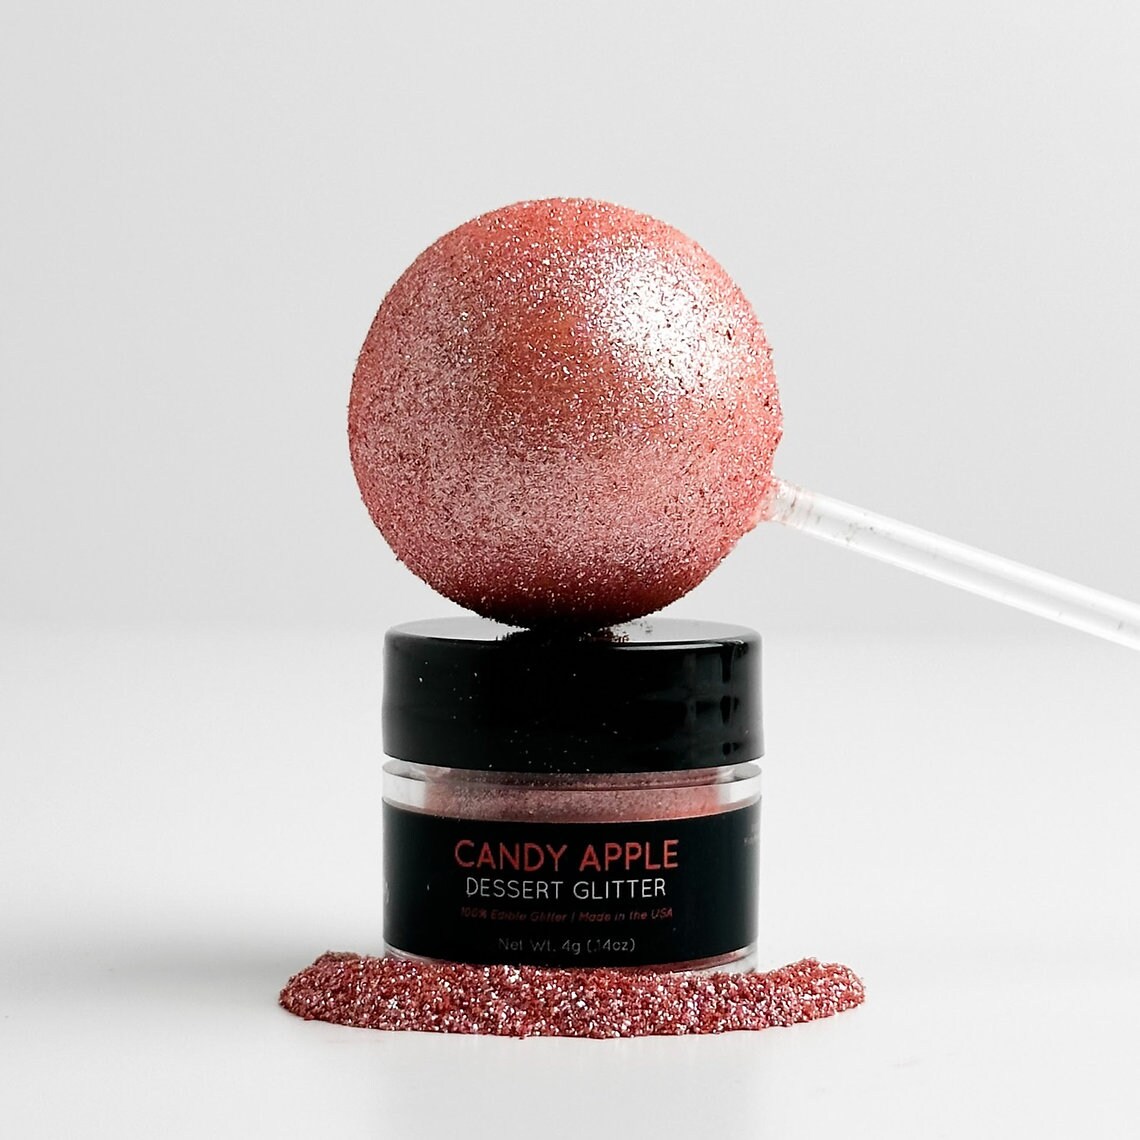 Shine Dessert Glitter: &#x22;Candy Apple&#x22; - Red Edible Dessert Glitter